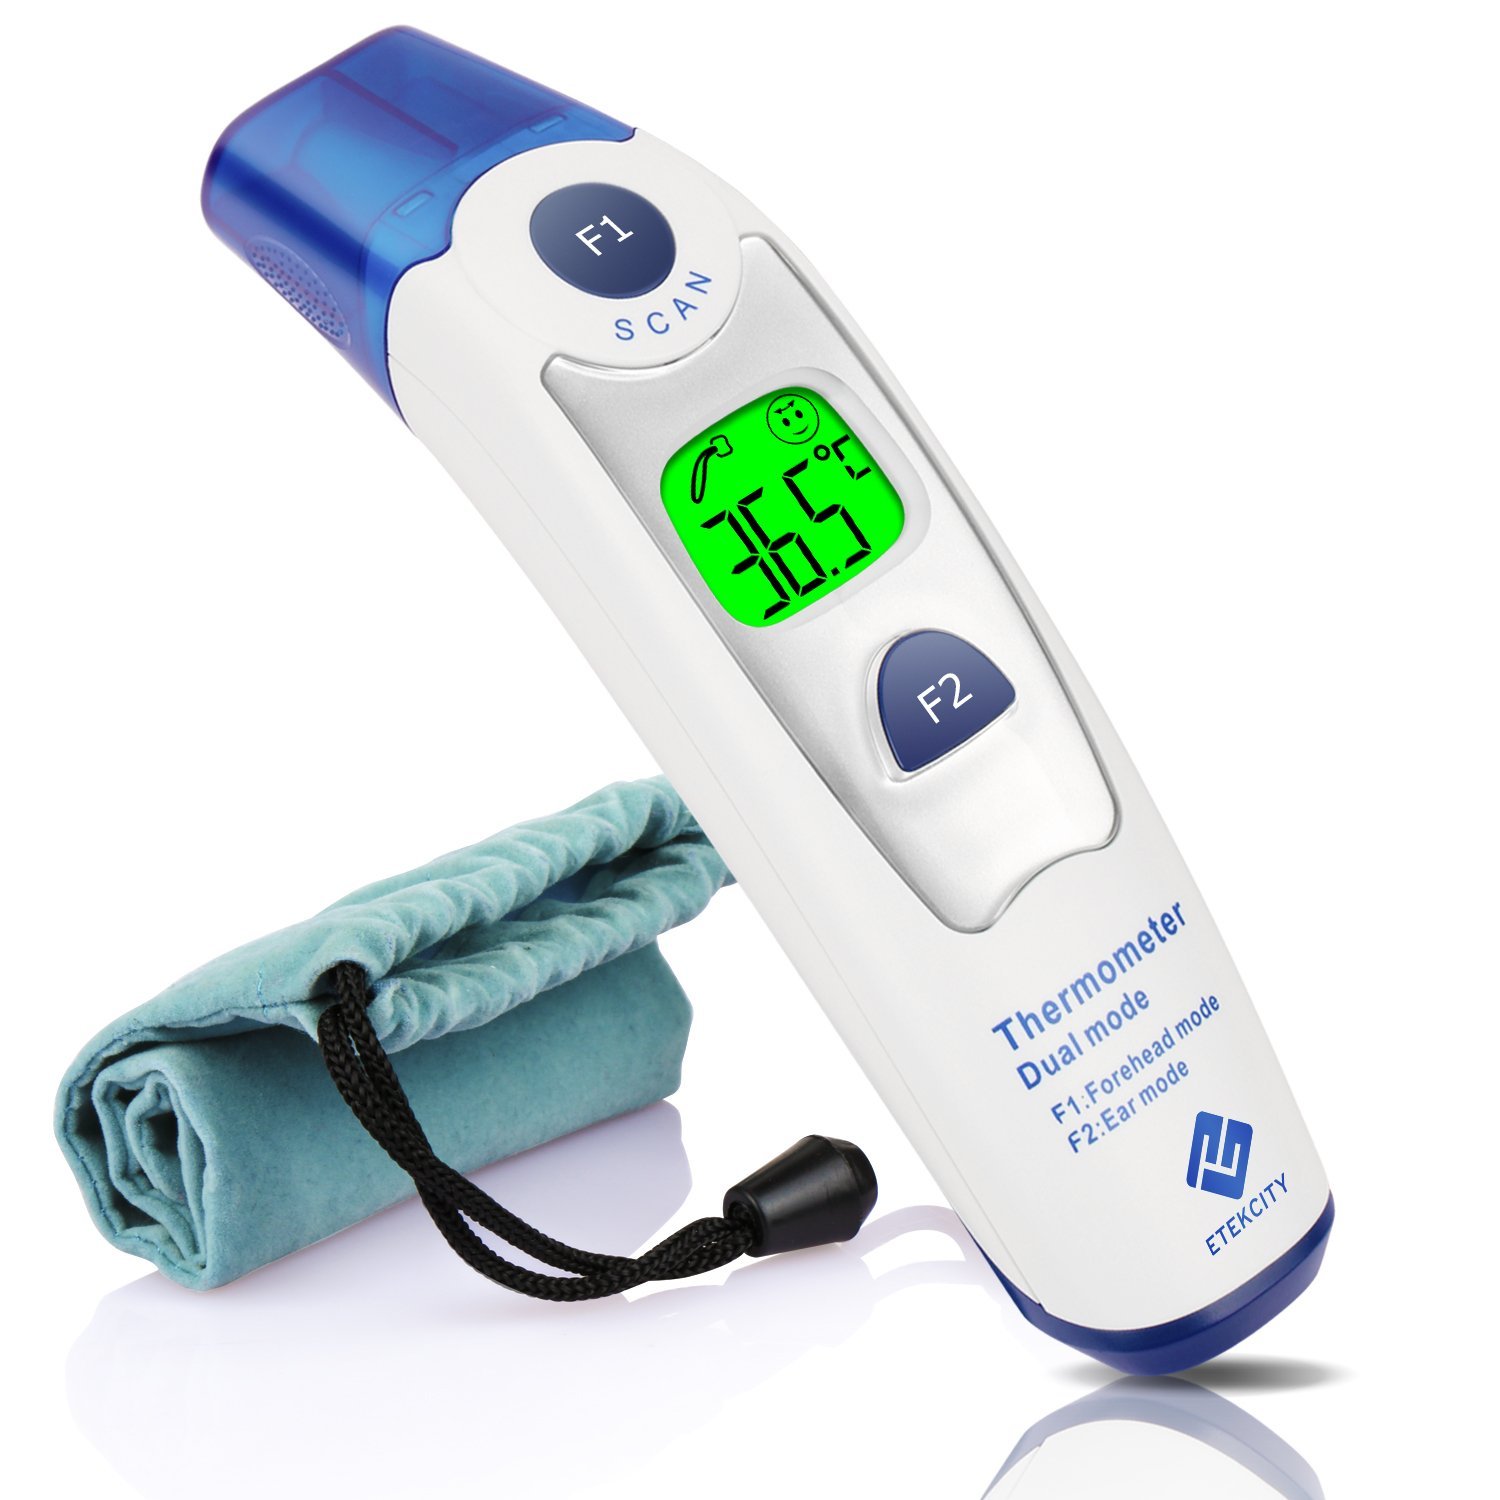 Bébé Confort 32000141 : notre test de ce thermomètre